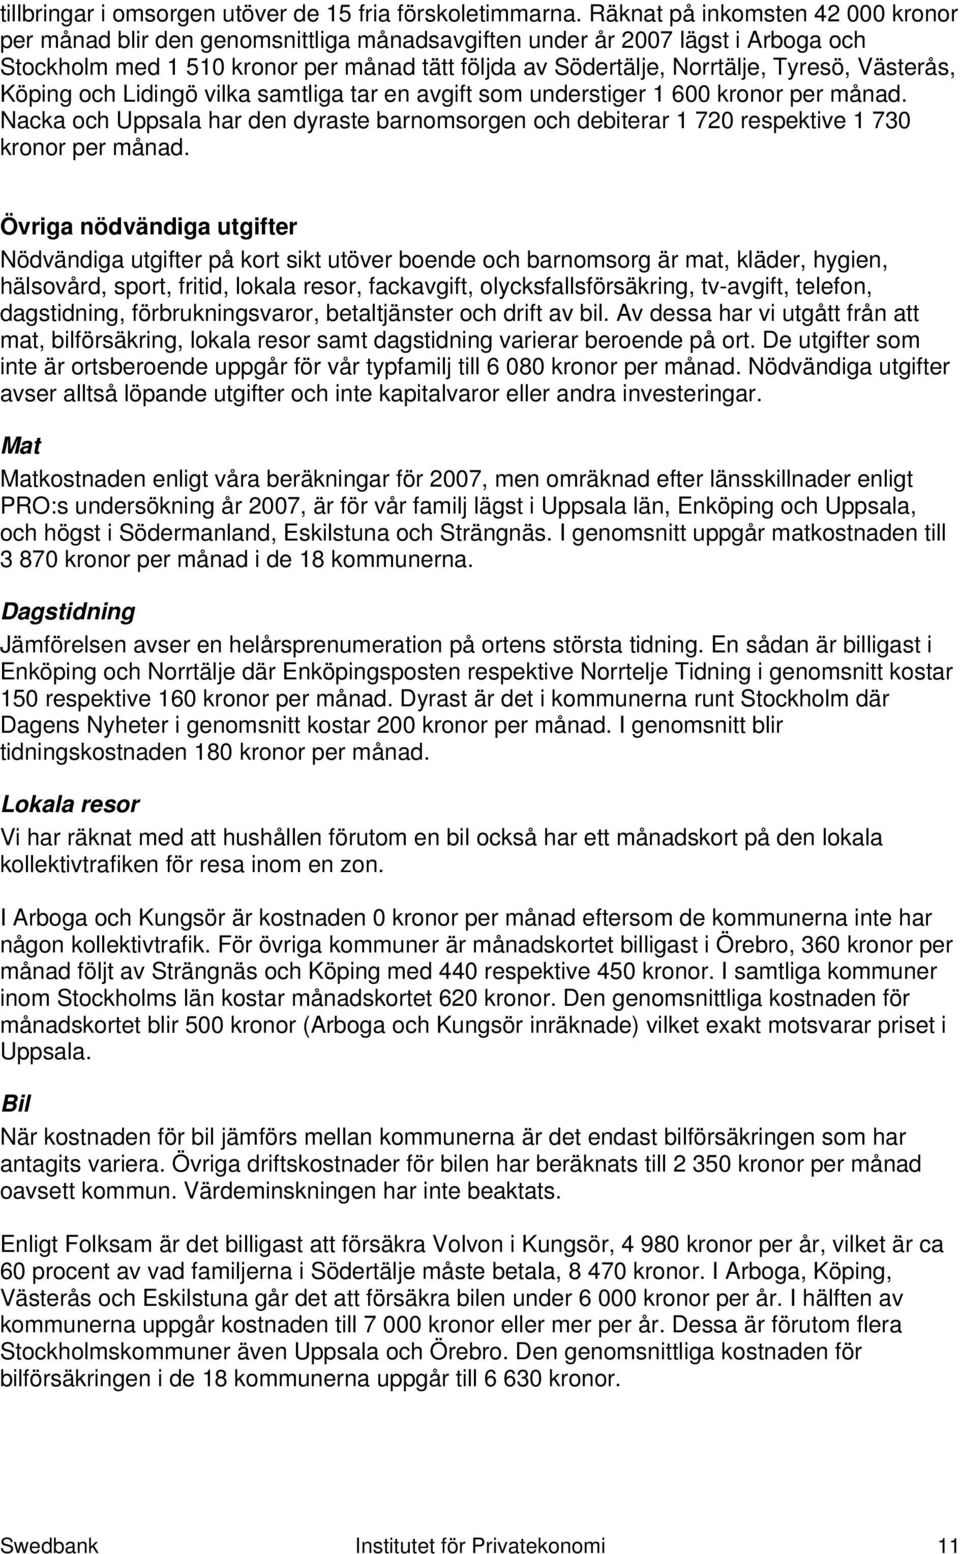 Västerås, Köping och Lidingö vilka samtliga tar en avgift som understiger 1 600 kronor per månad. Nacka och Uppsala har den dyraste barnomsorgen och debiterar 1 720 respektive 1 730 kronor per månad.